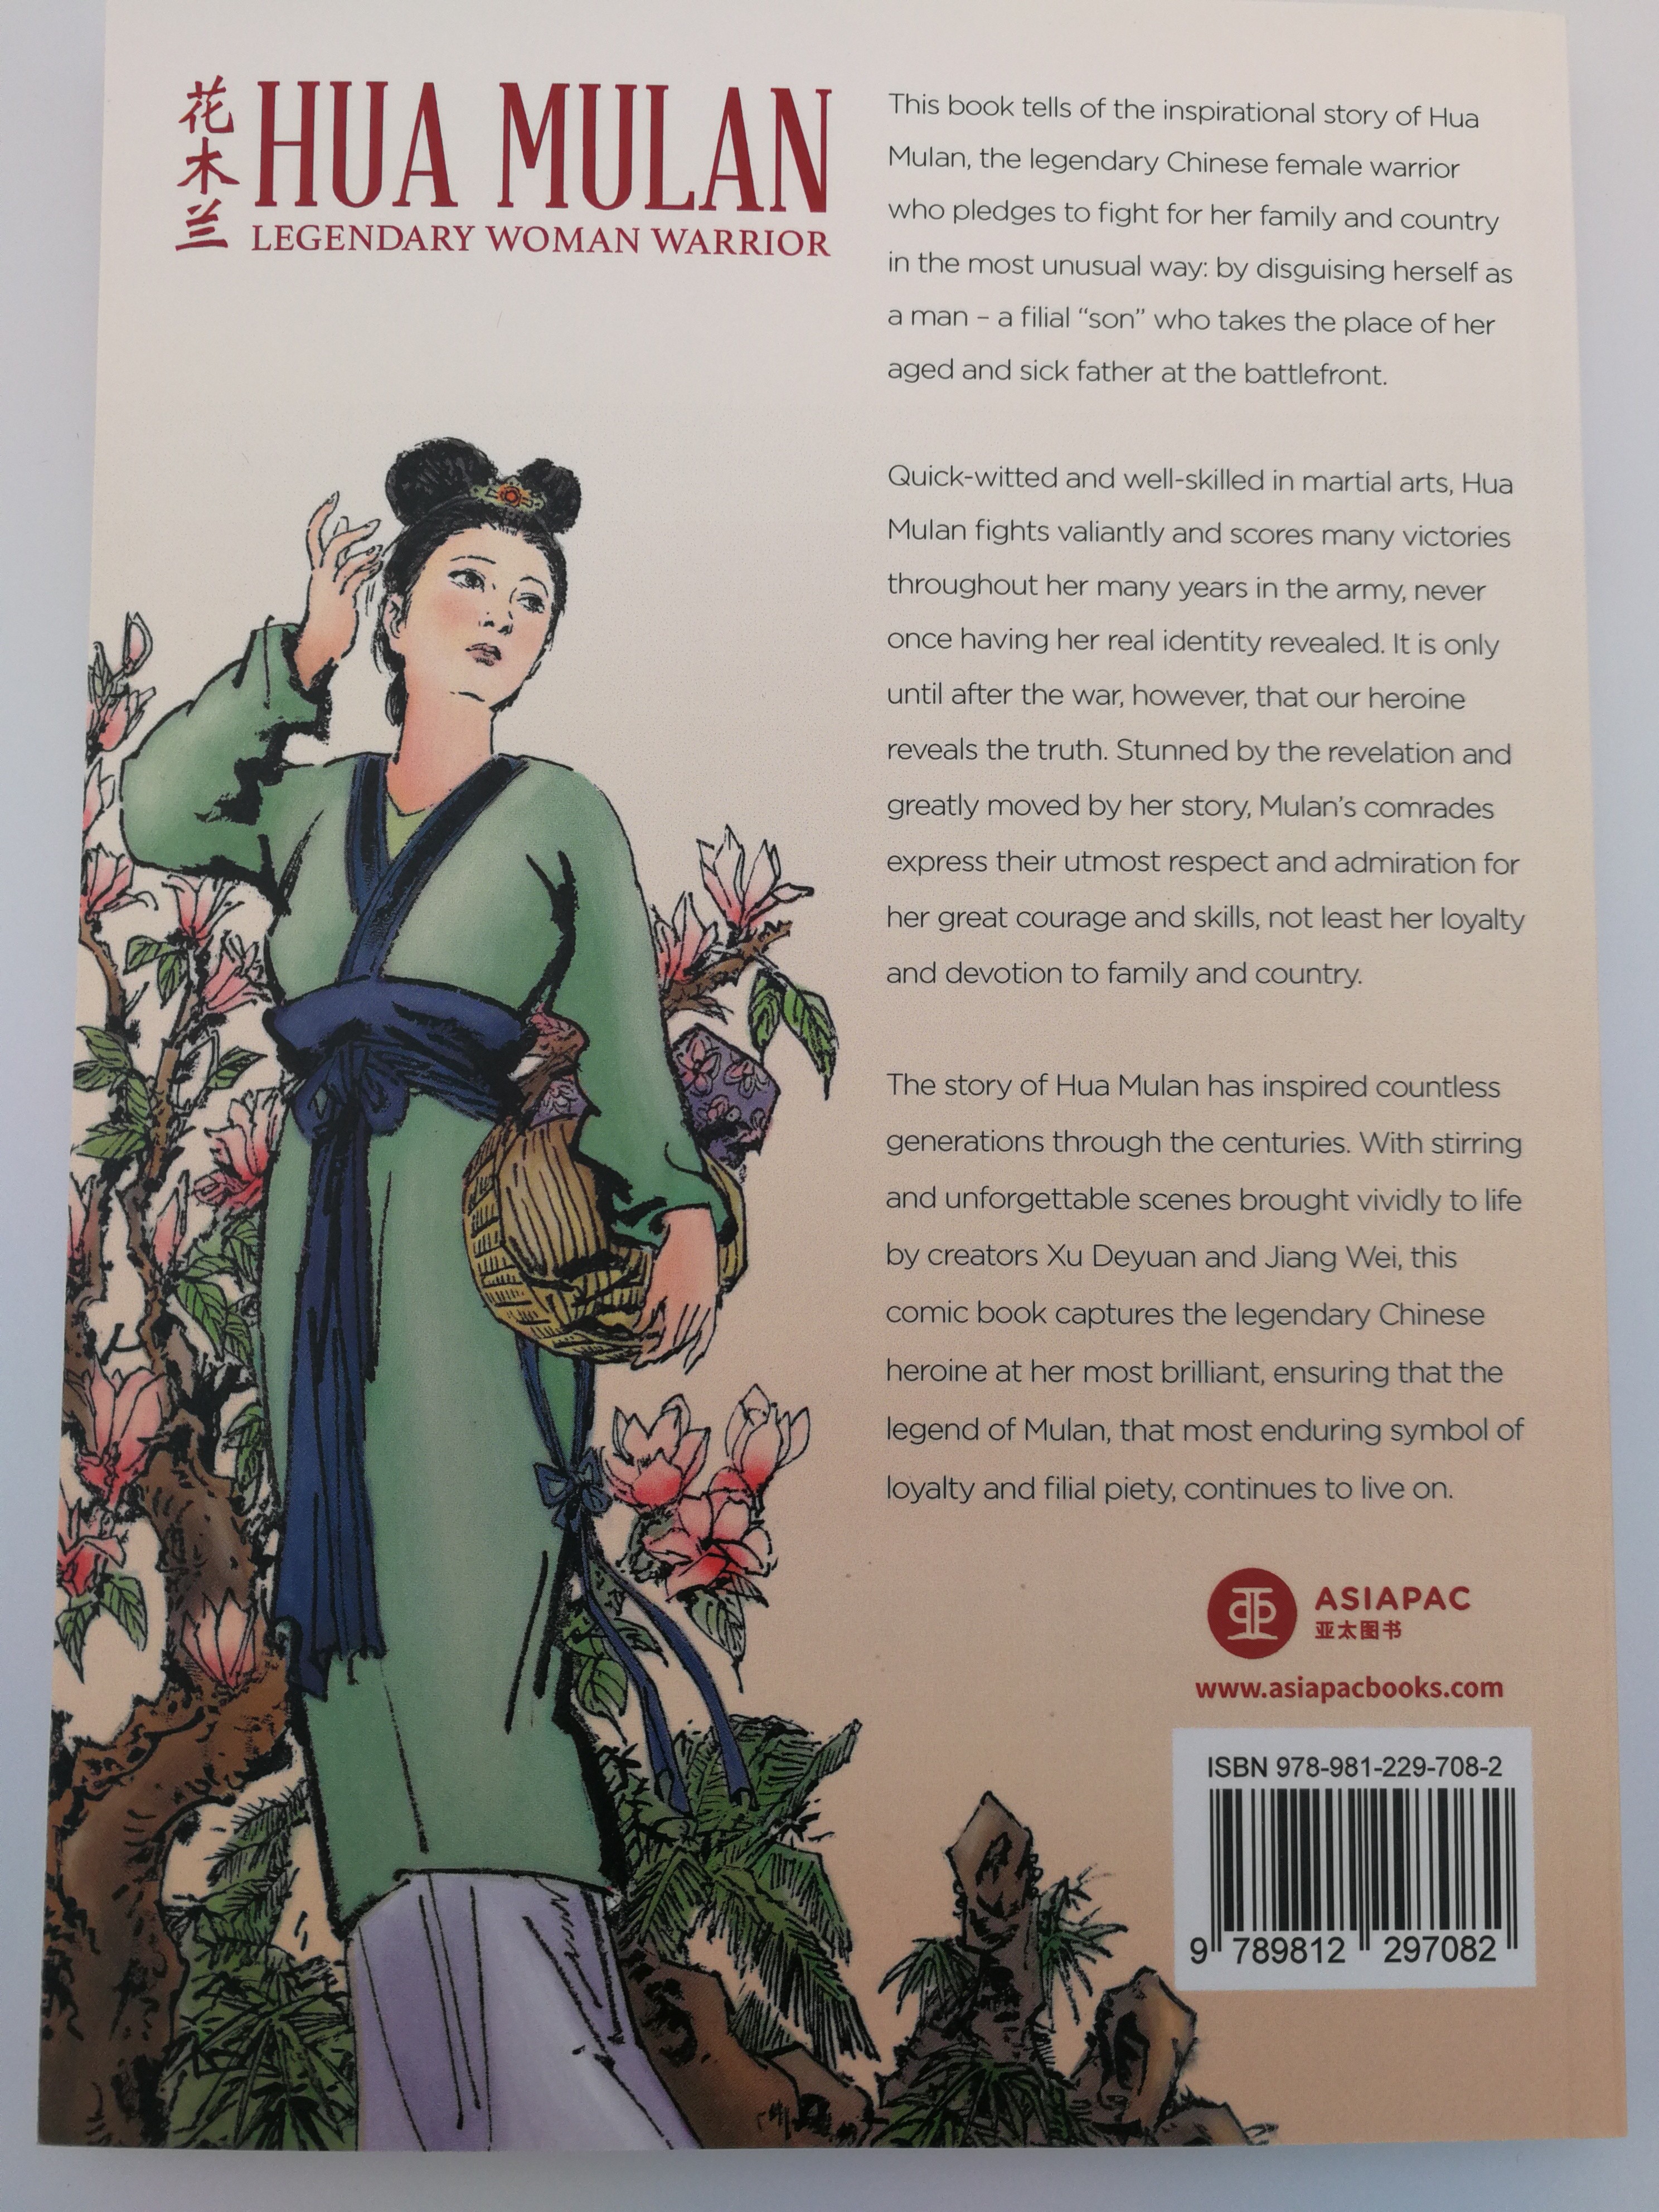 Hua Mulan - Legendary Woman Warrior by Xu Deyuan & Jian Wei 1